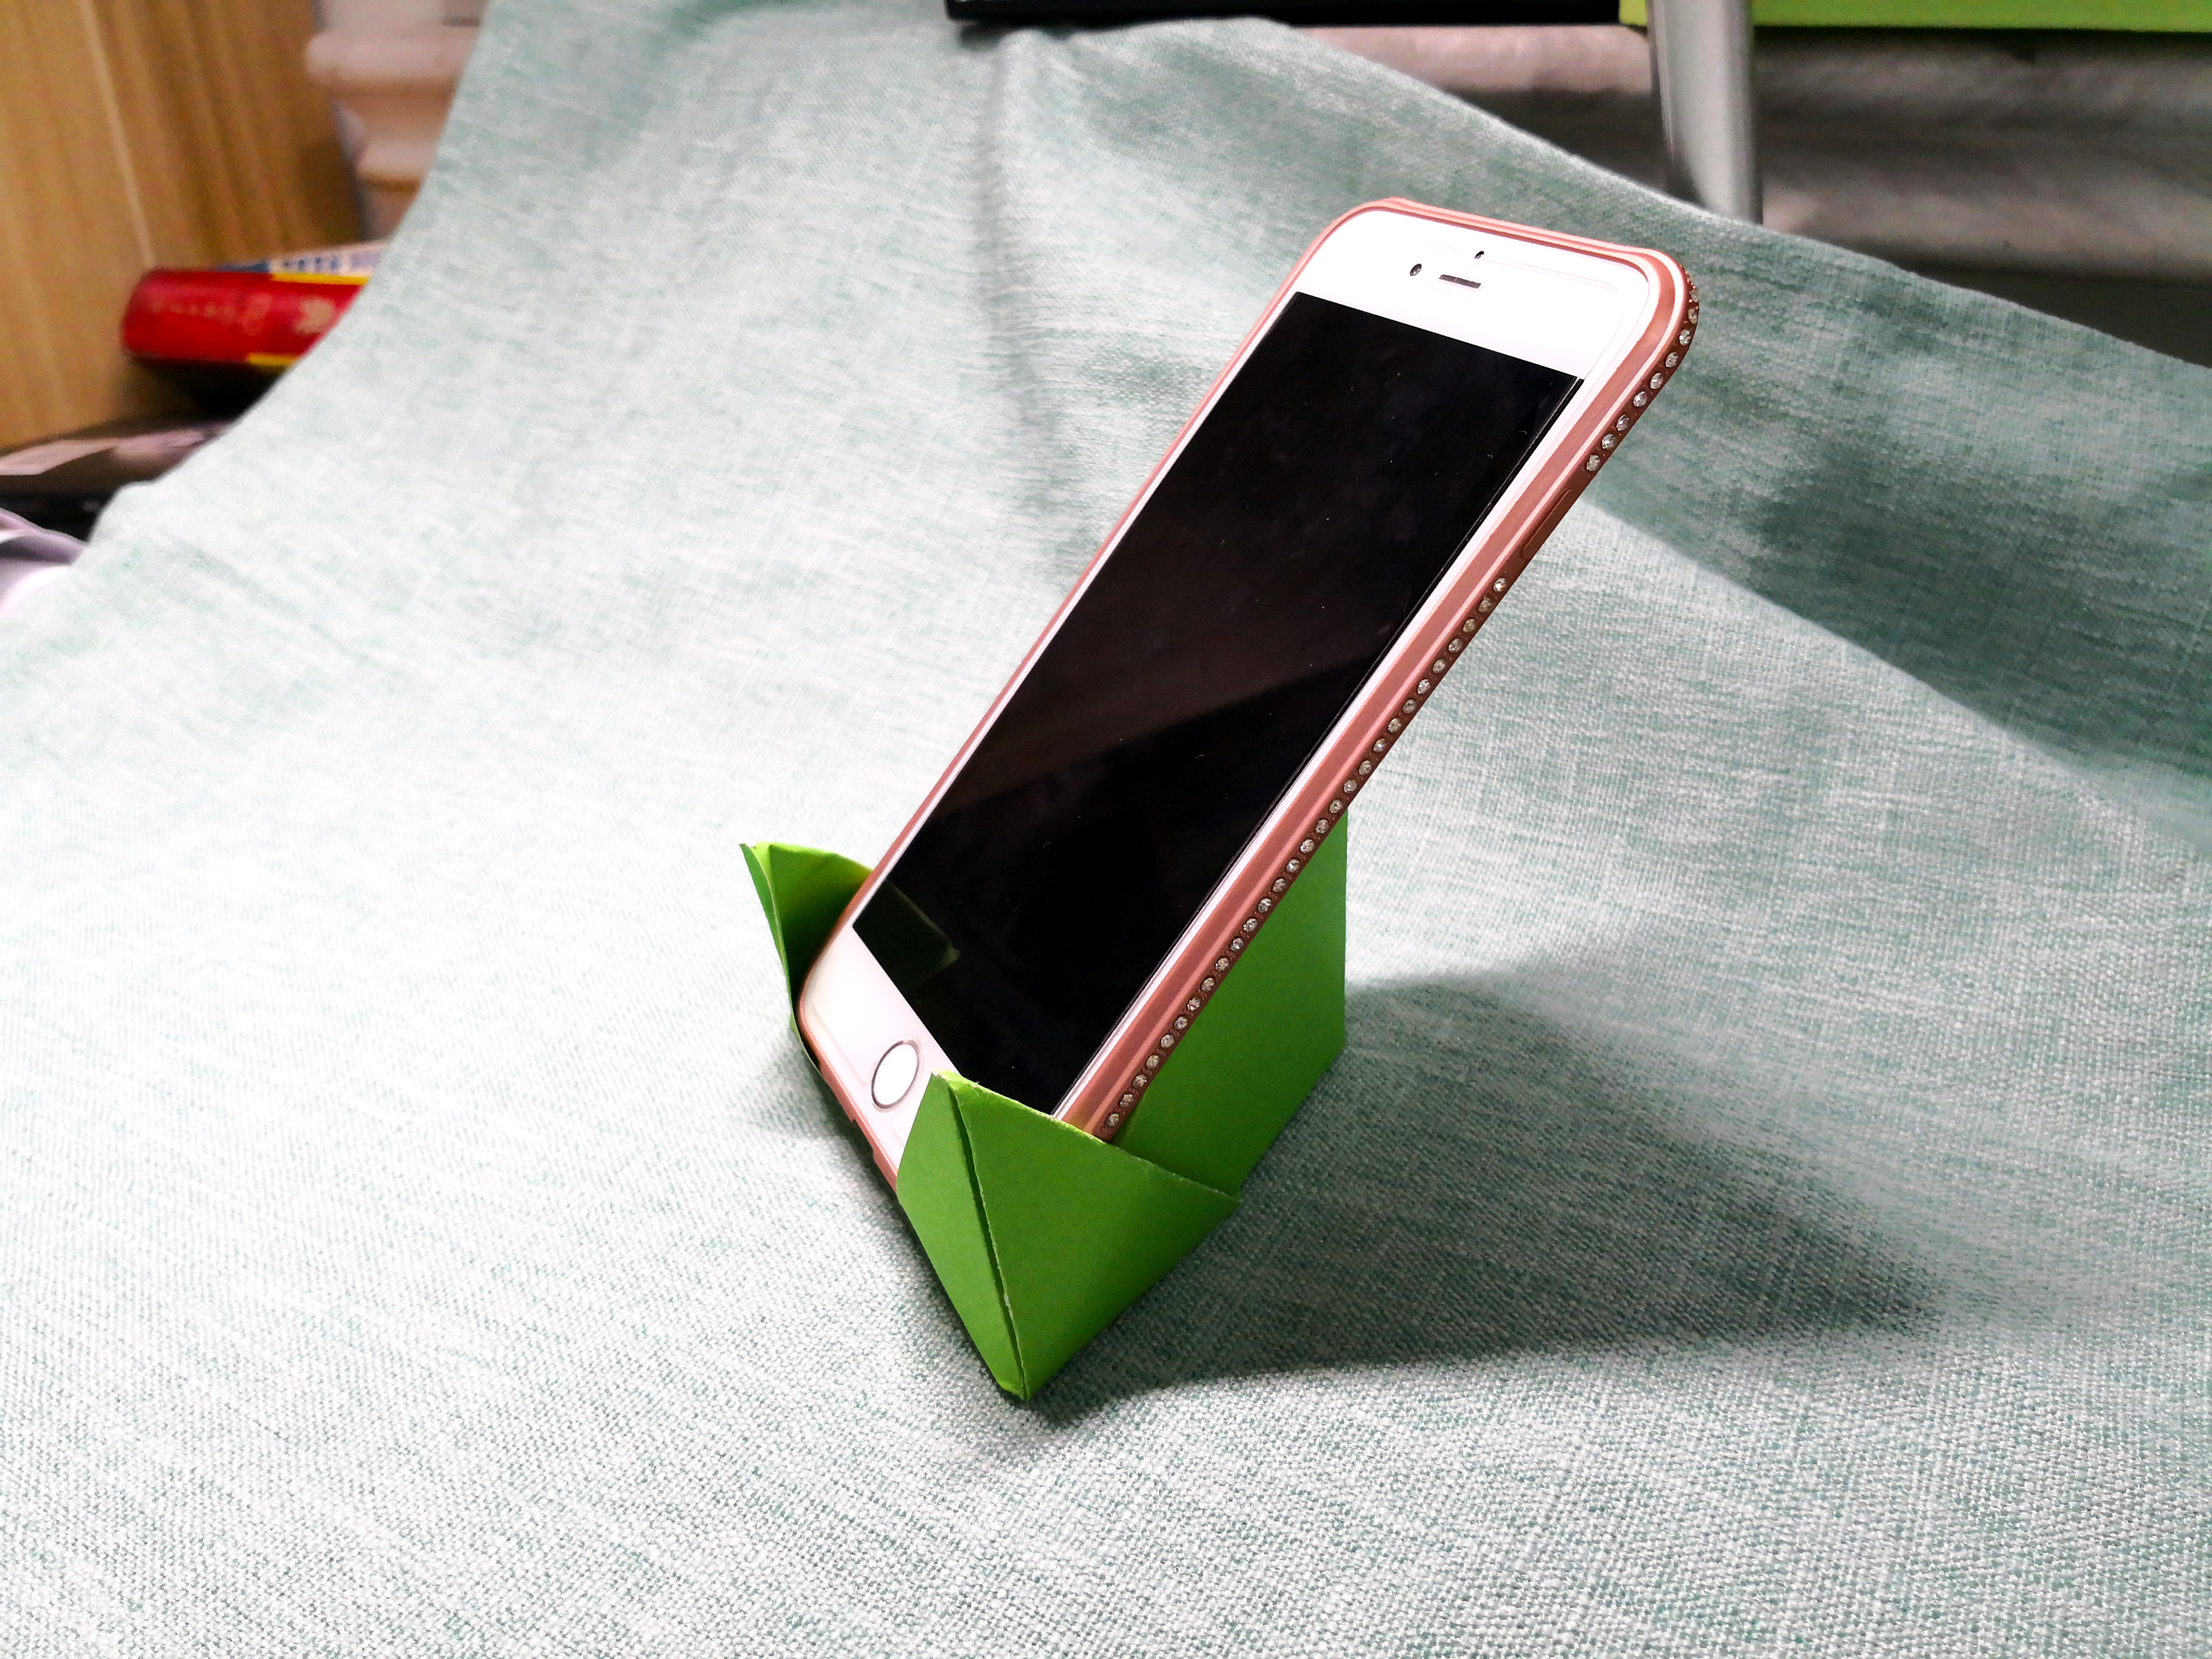 创意折纸大全:分享2款非常实用的手机支架折法